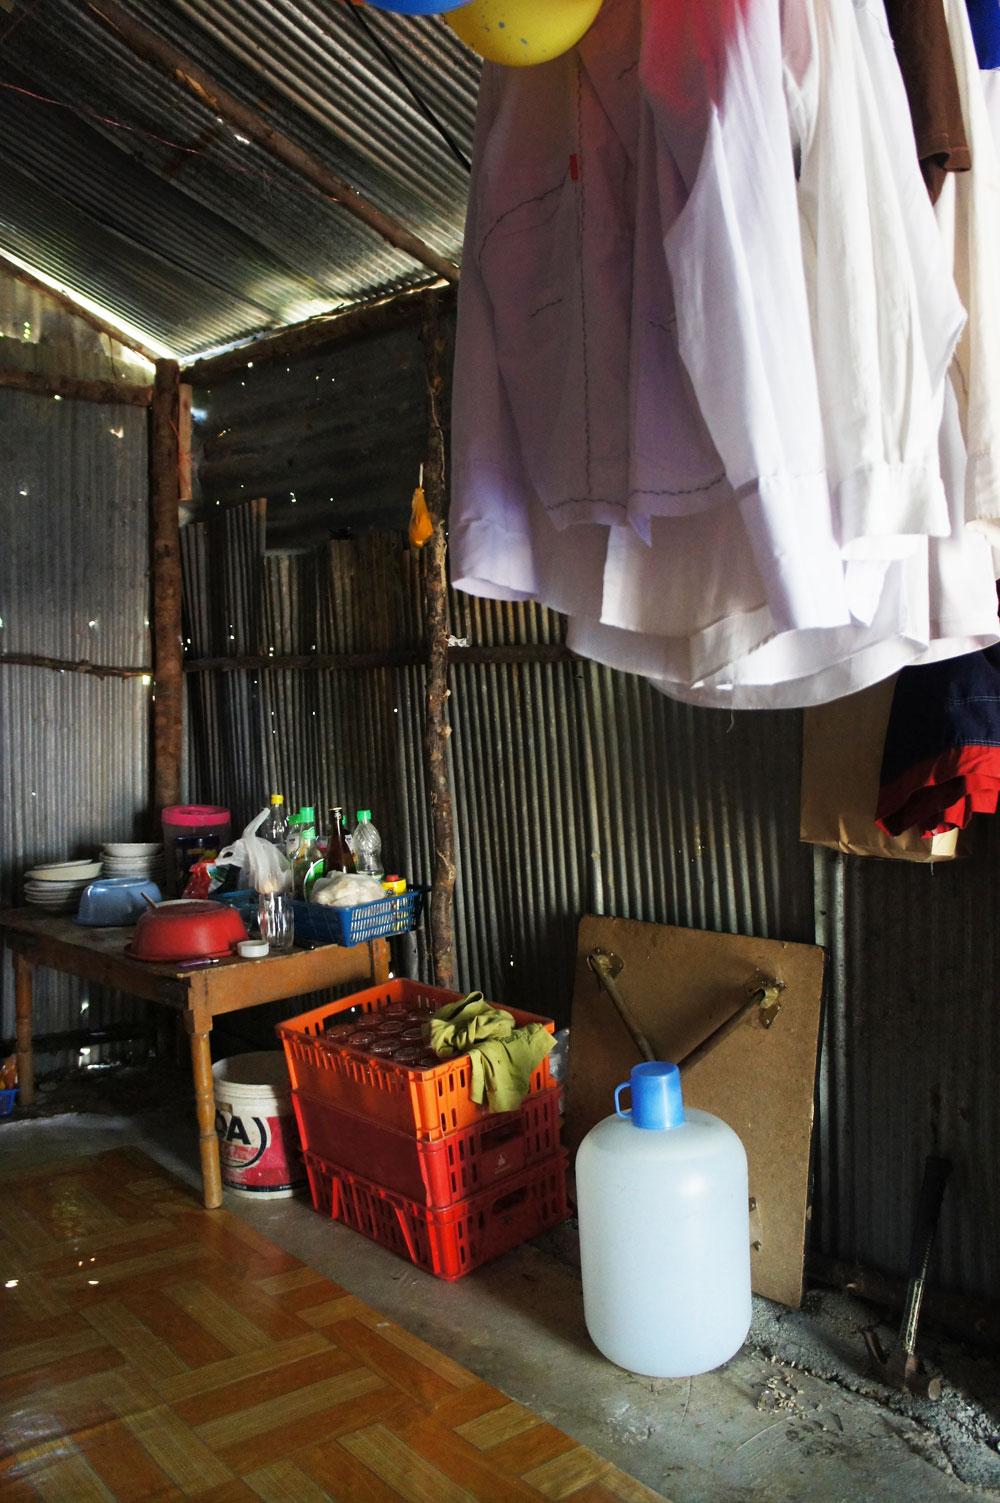 Hemma hos en arbetare i Khao Lak. Bilden kommer från Schyst resandes rapport.